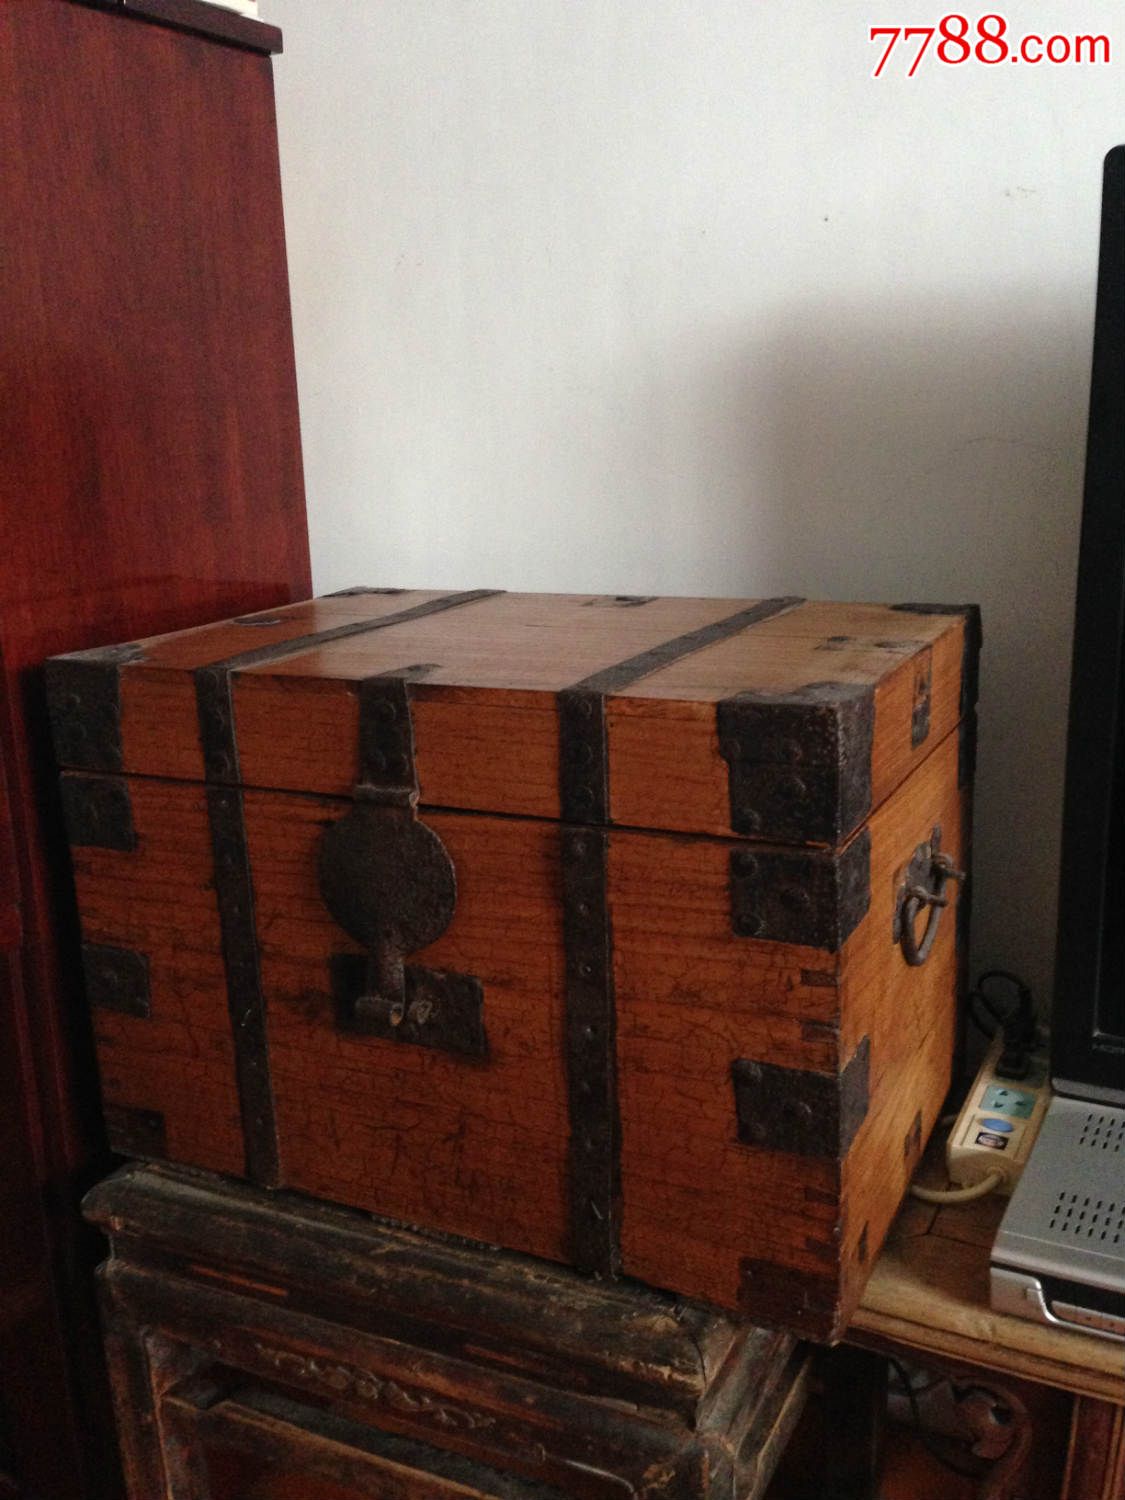 木器大箱子衣箱画箱储物箱榉木木箱滚动鼠标滚轴,图片即可轻松放大